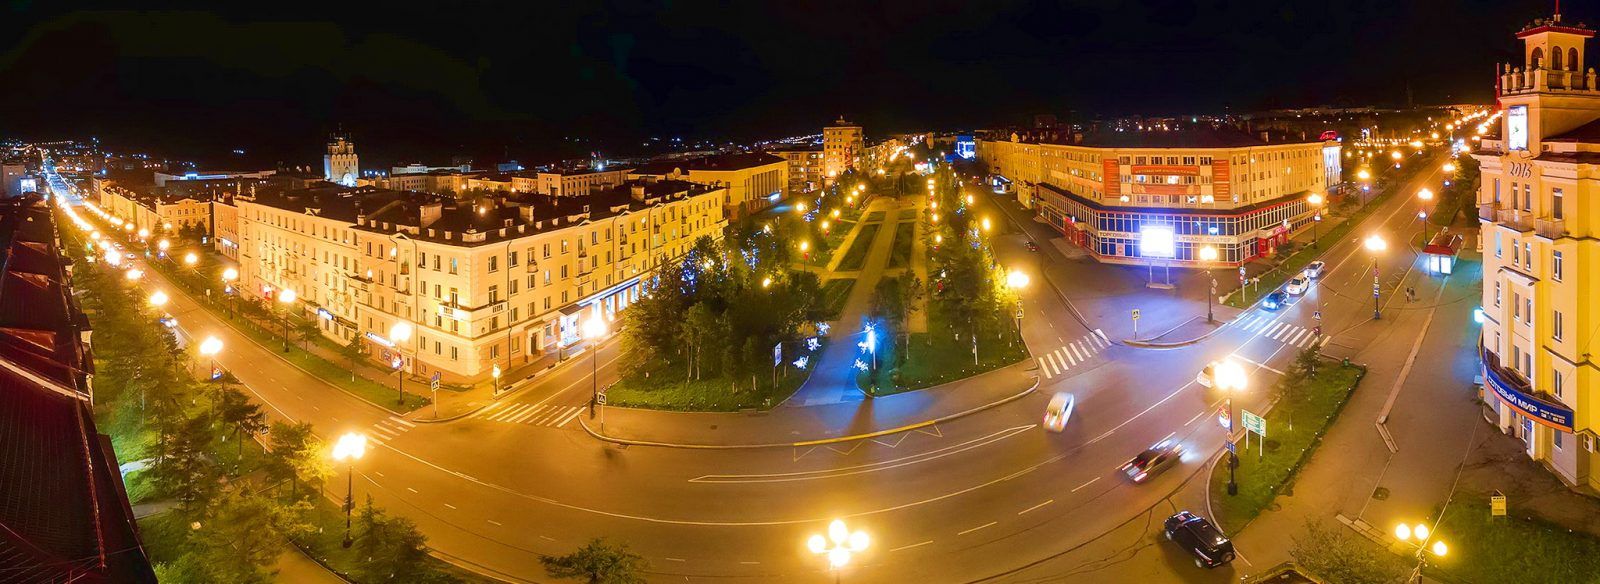 Ночной Магадан. Автор фото Алексей Гнездилов